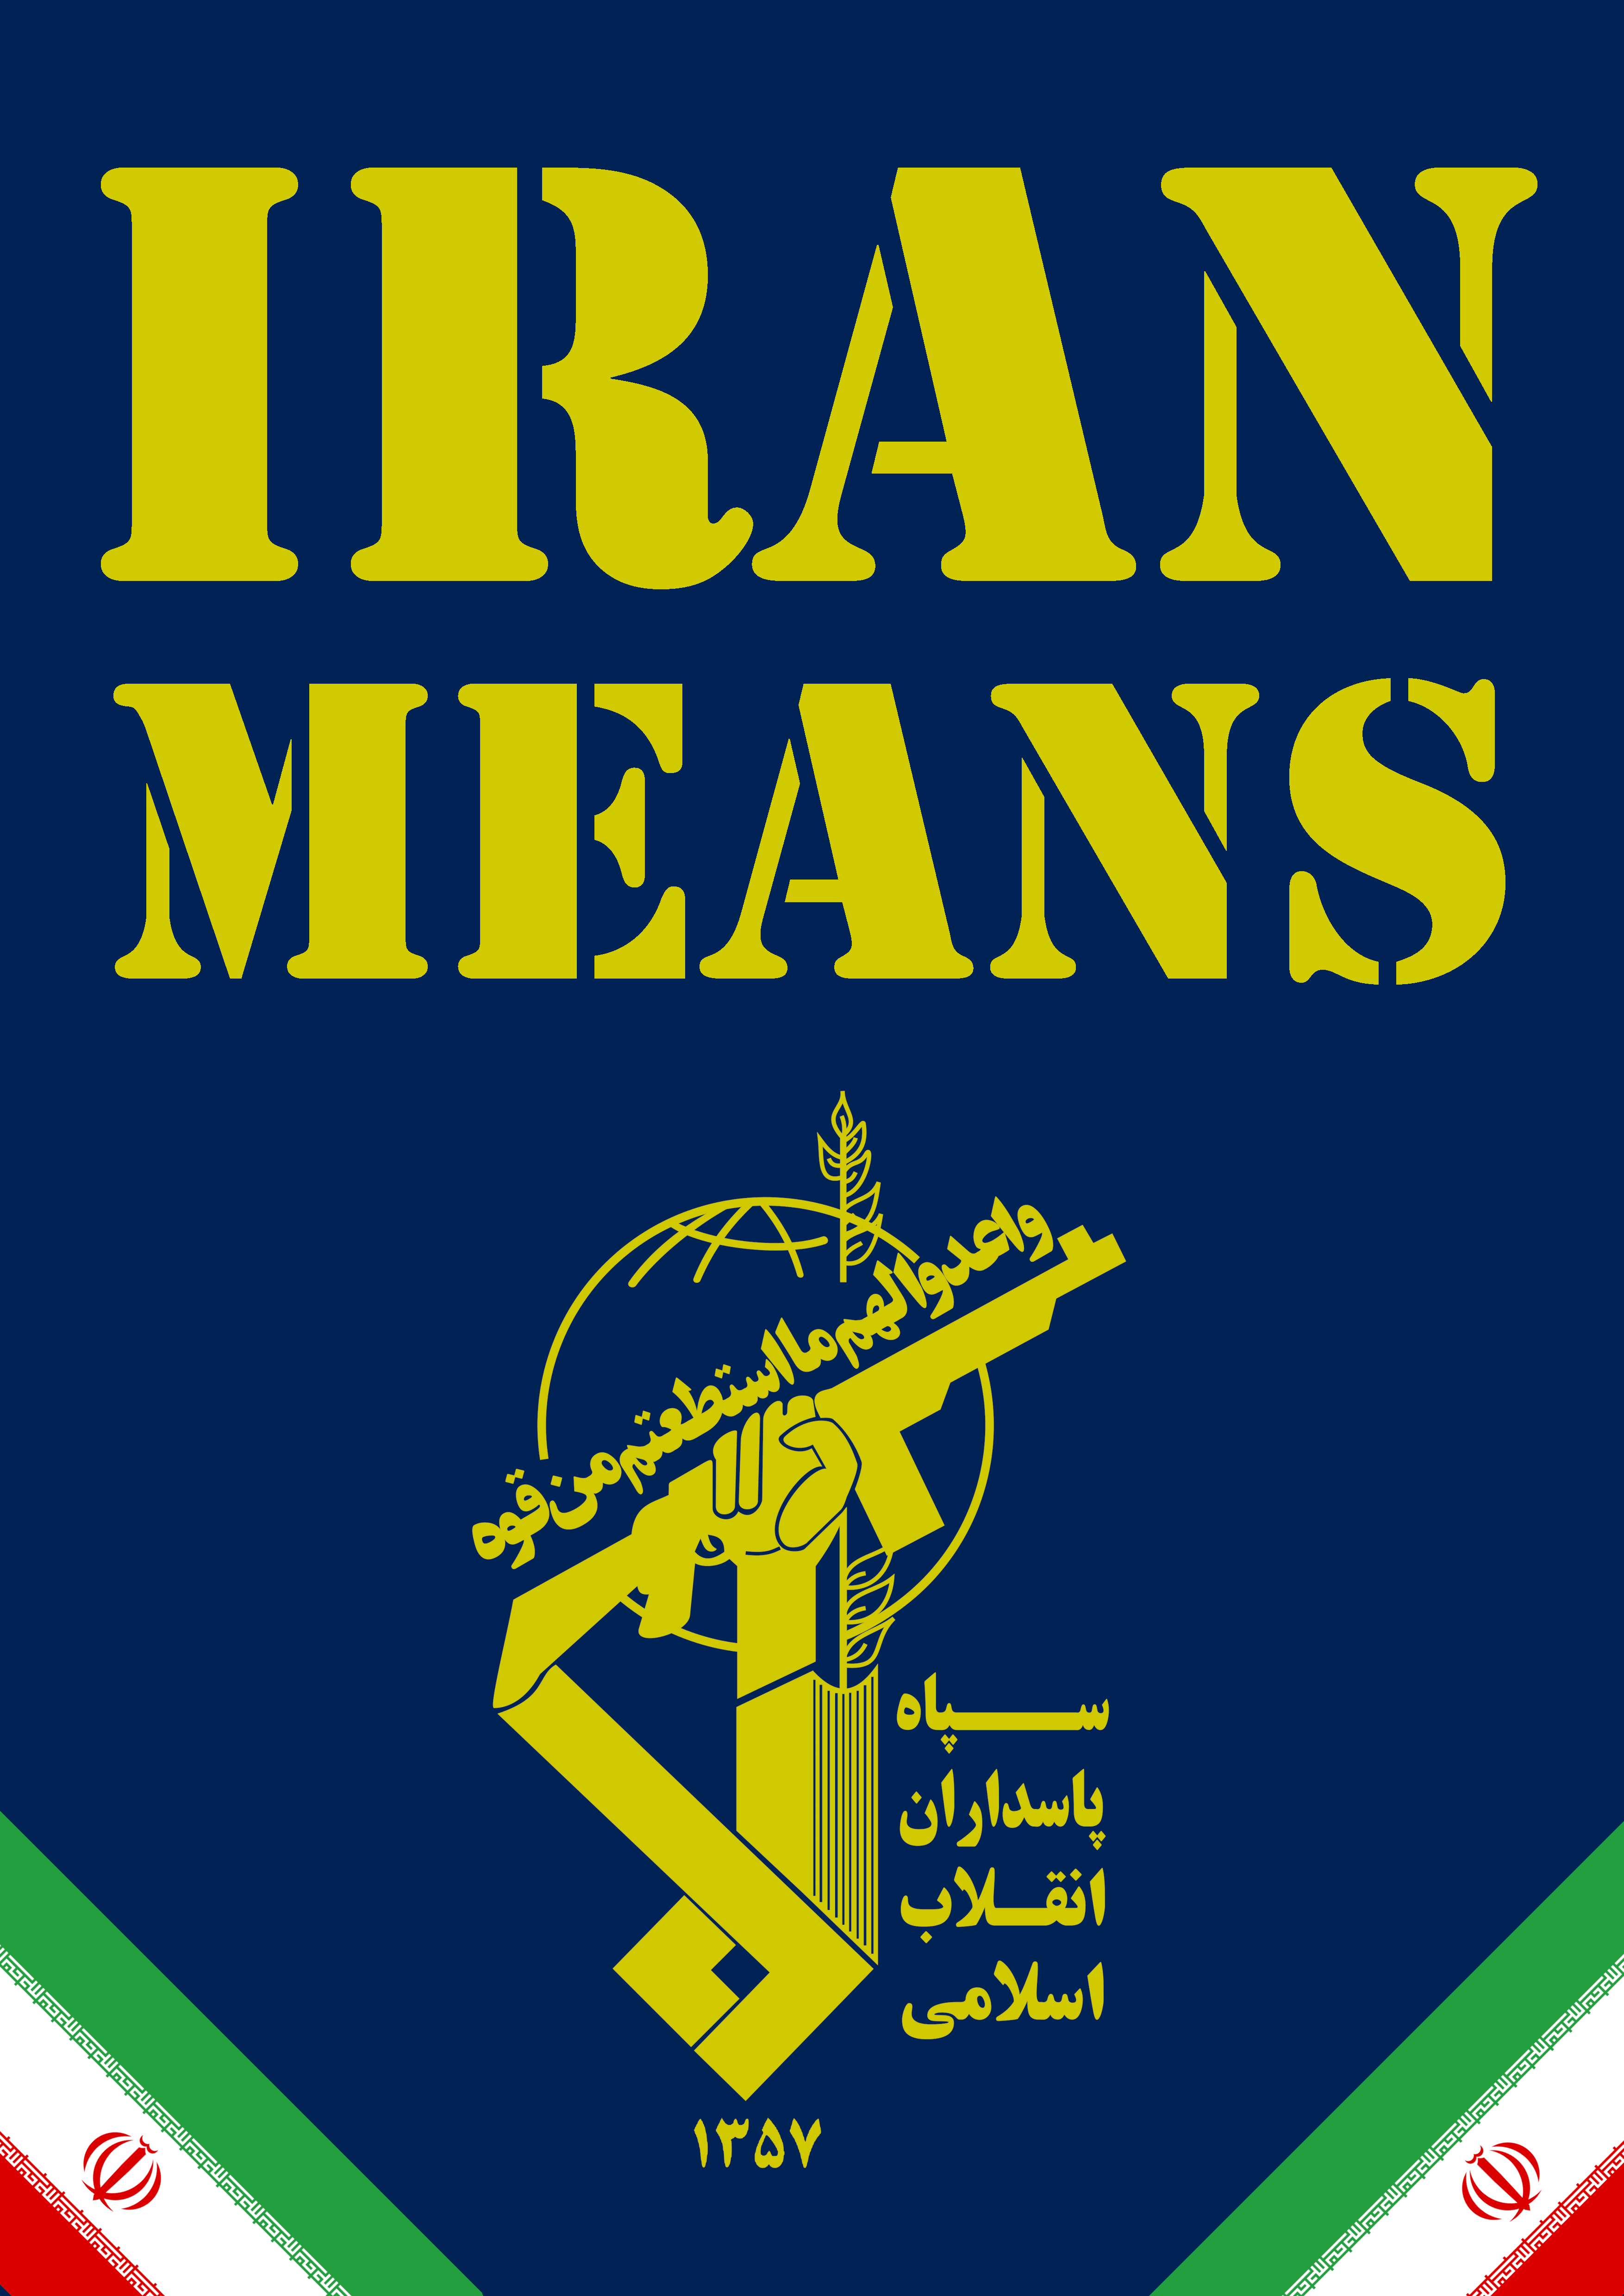 Iran means Sepah